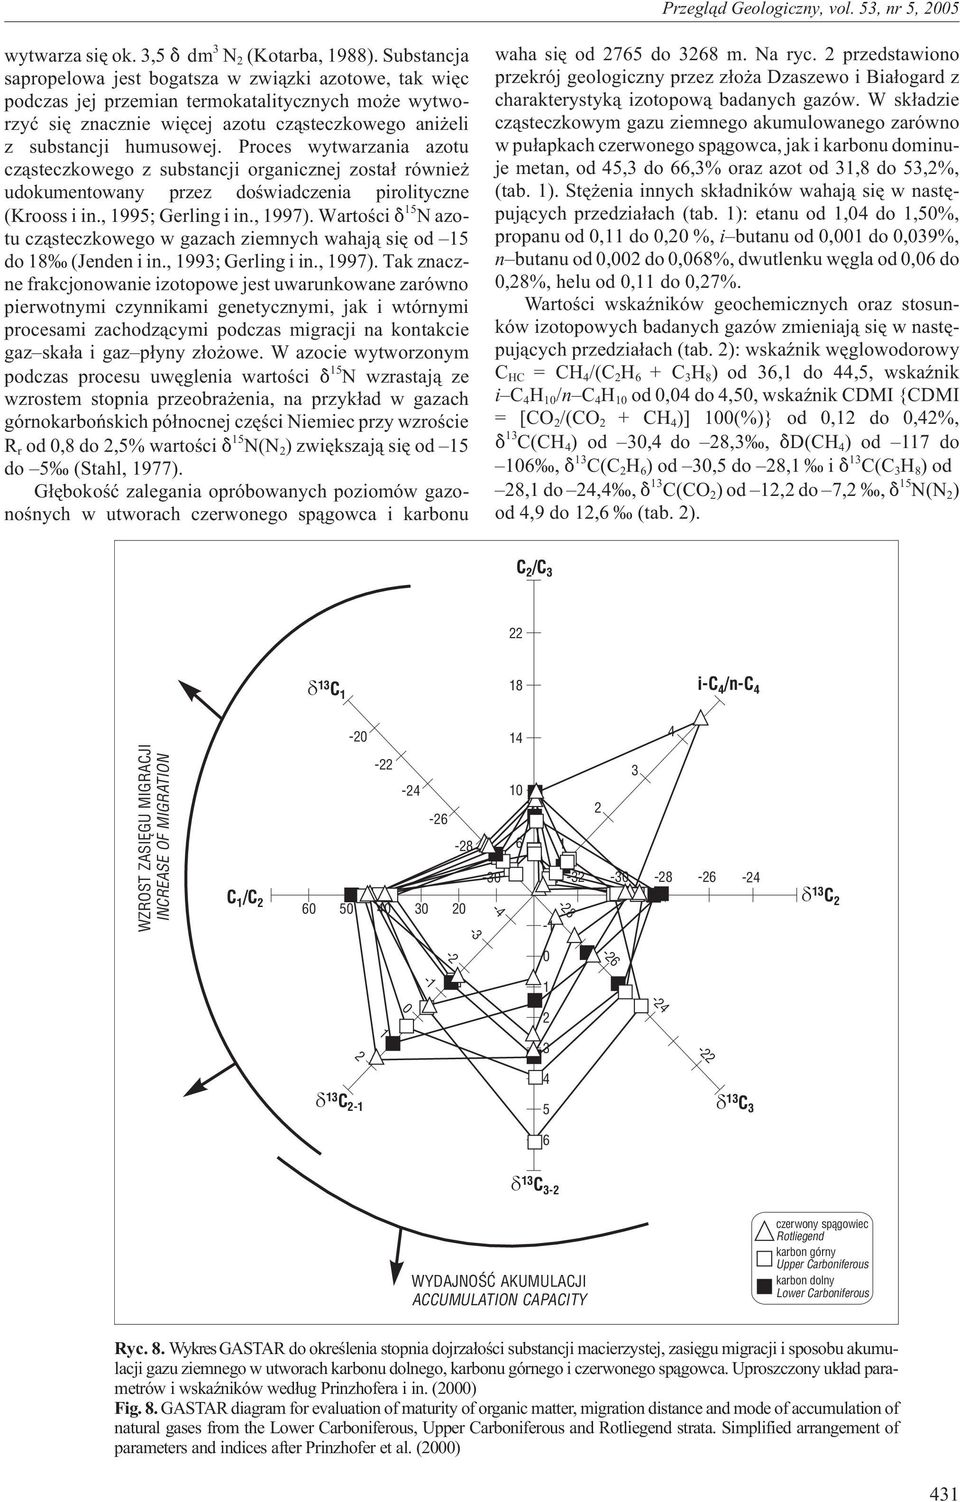 Proces wytwarzania azotu cz¹steczkowego z substancji organicznej zosta³ równie udokumentowany przez doœwiadczenia pirolityczne (Krooss i in., 1995; Gerling i in., 1997).